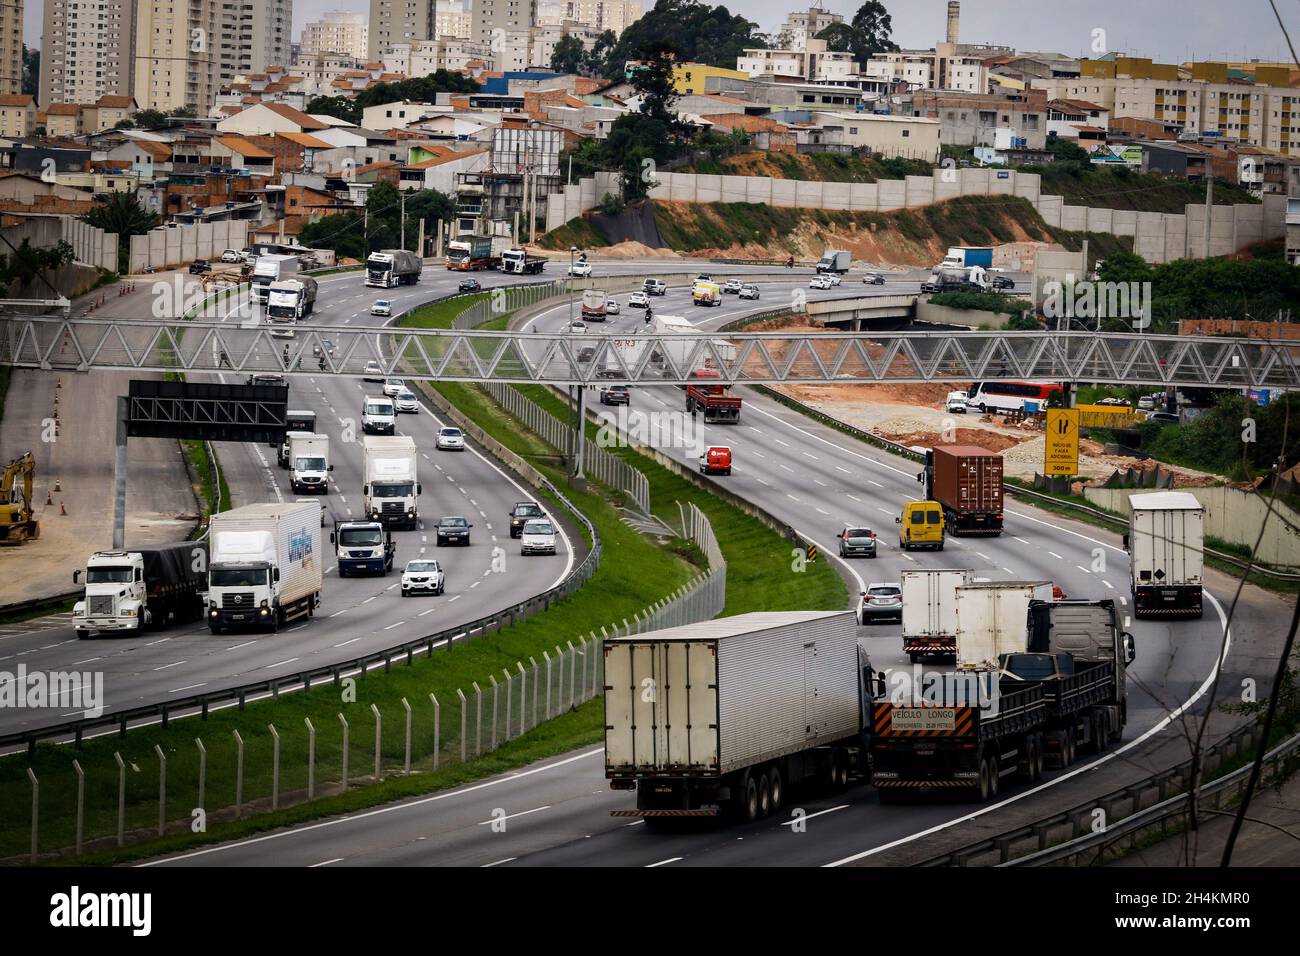 São PAULO, SP - 03.11.2021: CAMINHONEIROS CONSEGUEM DERRUBAR LIMINARES - das Bundeslandesgericht der 1. Region, hat 11 Verfügungen, die die Sperrung von Autobahnen während des Streiks von Lkw-Fahrern im ganzen Land verhinderten, auf Antrag der Brasilianischen Vereinigung der Kraftfahrzeugführer (ABRAVA) abgelehnt. Nach Angaben des Führers der Lkw-Fahrer, Chorão, sagte am vergangenen Dienstag (2), dass sie nach dem Sturz der anderen Verfügungen in den Staaten von São Paulo, Rio de Janeiro, Rio Grande do Sul und Santa Catarina laufen (Foto: Aloisio Mauricio/Fotoarena) Stockfoto